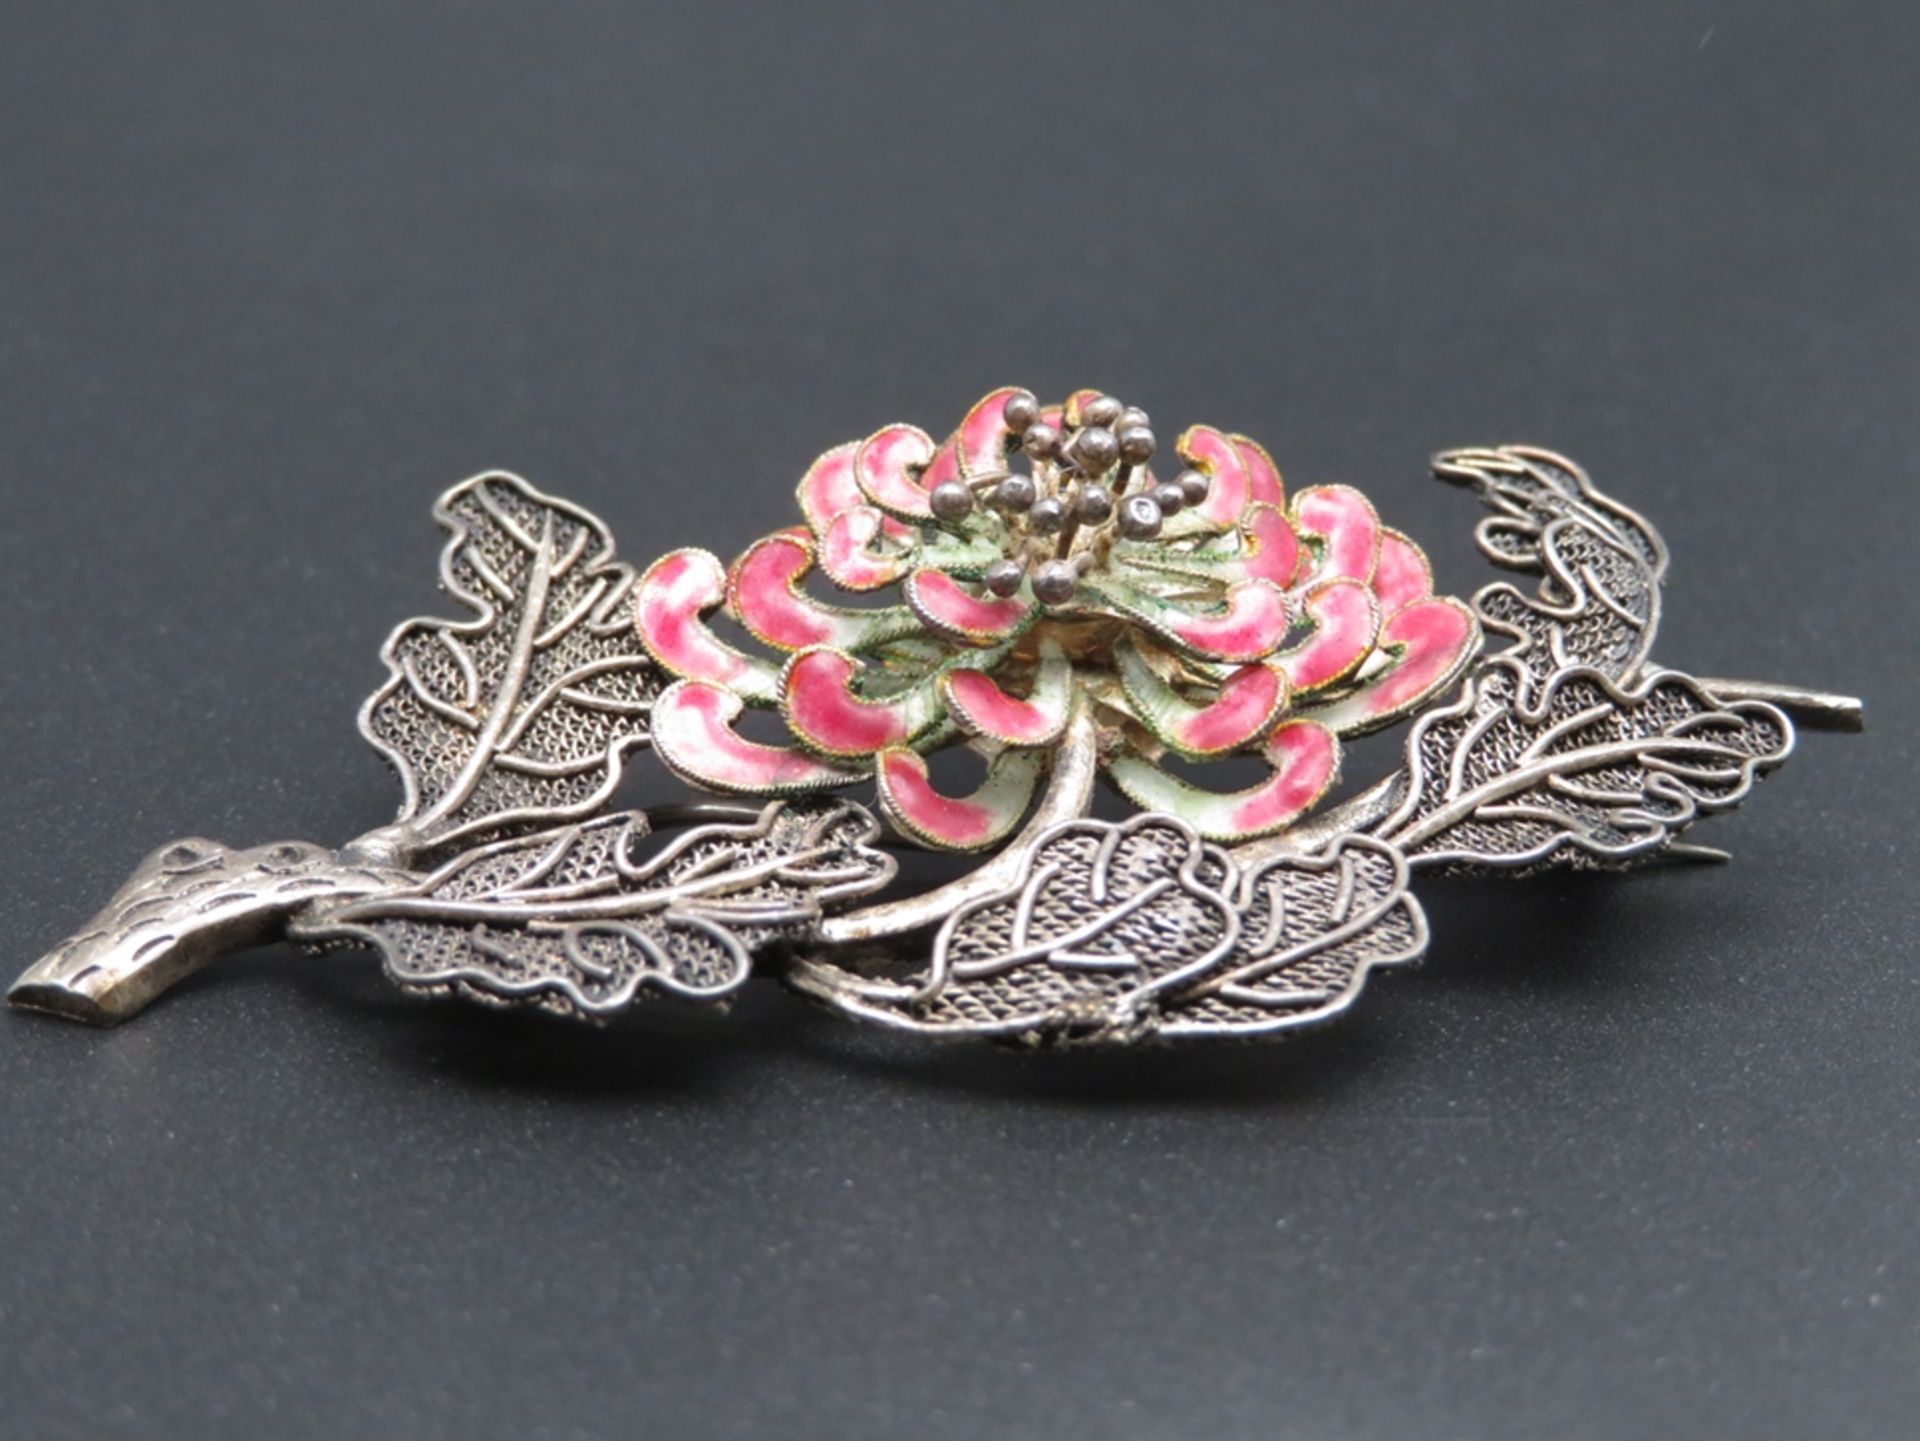 Brosche in Form einer Chrysantheme, wohl China, Silber, teils durchbrochen gearbeitet, Blütenblätte